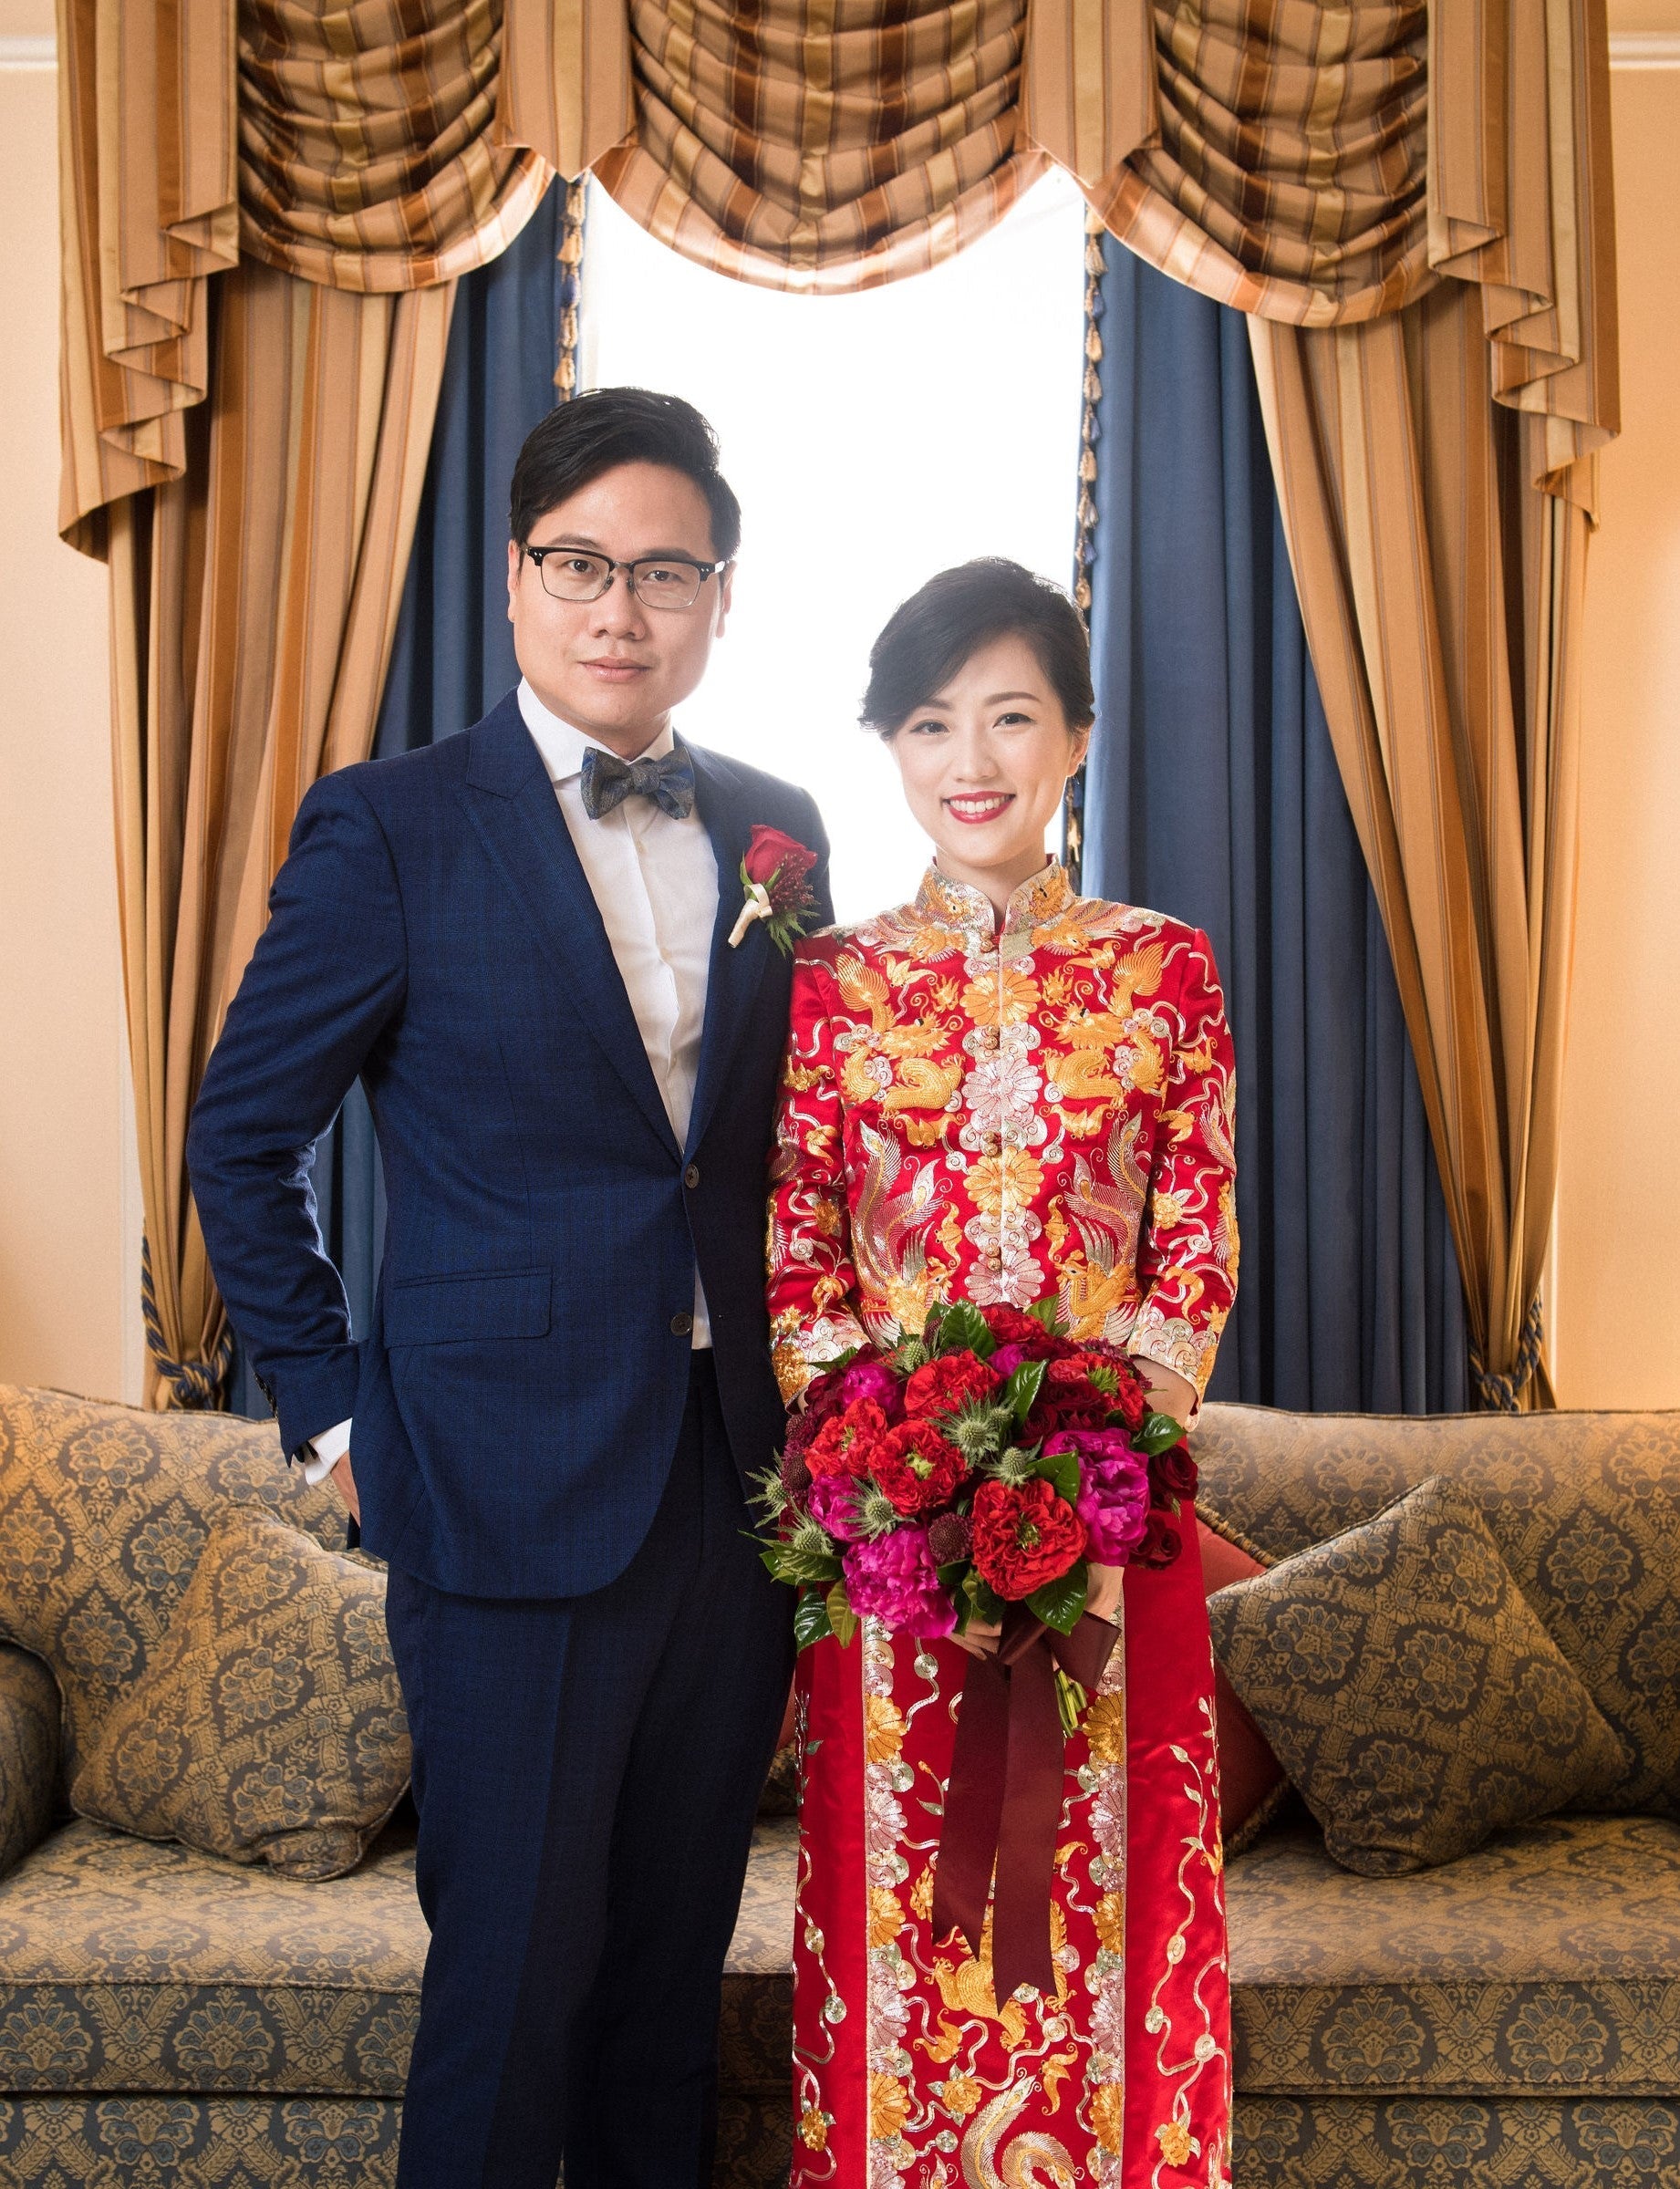 Chinese Wedding & Pheonix – Shanghai